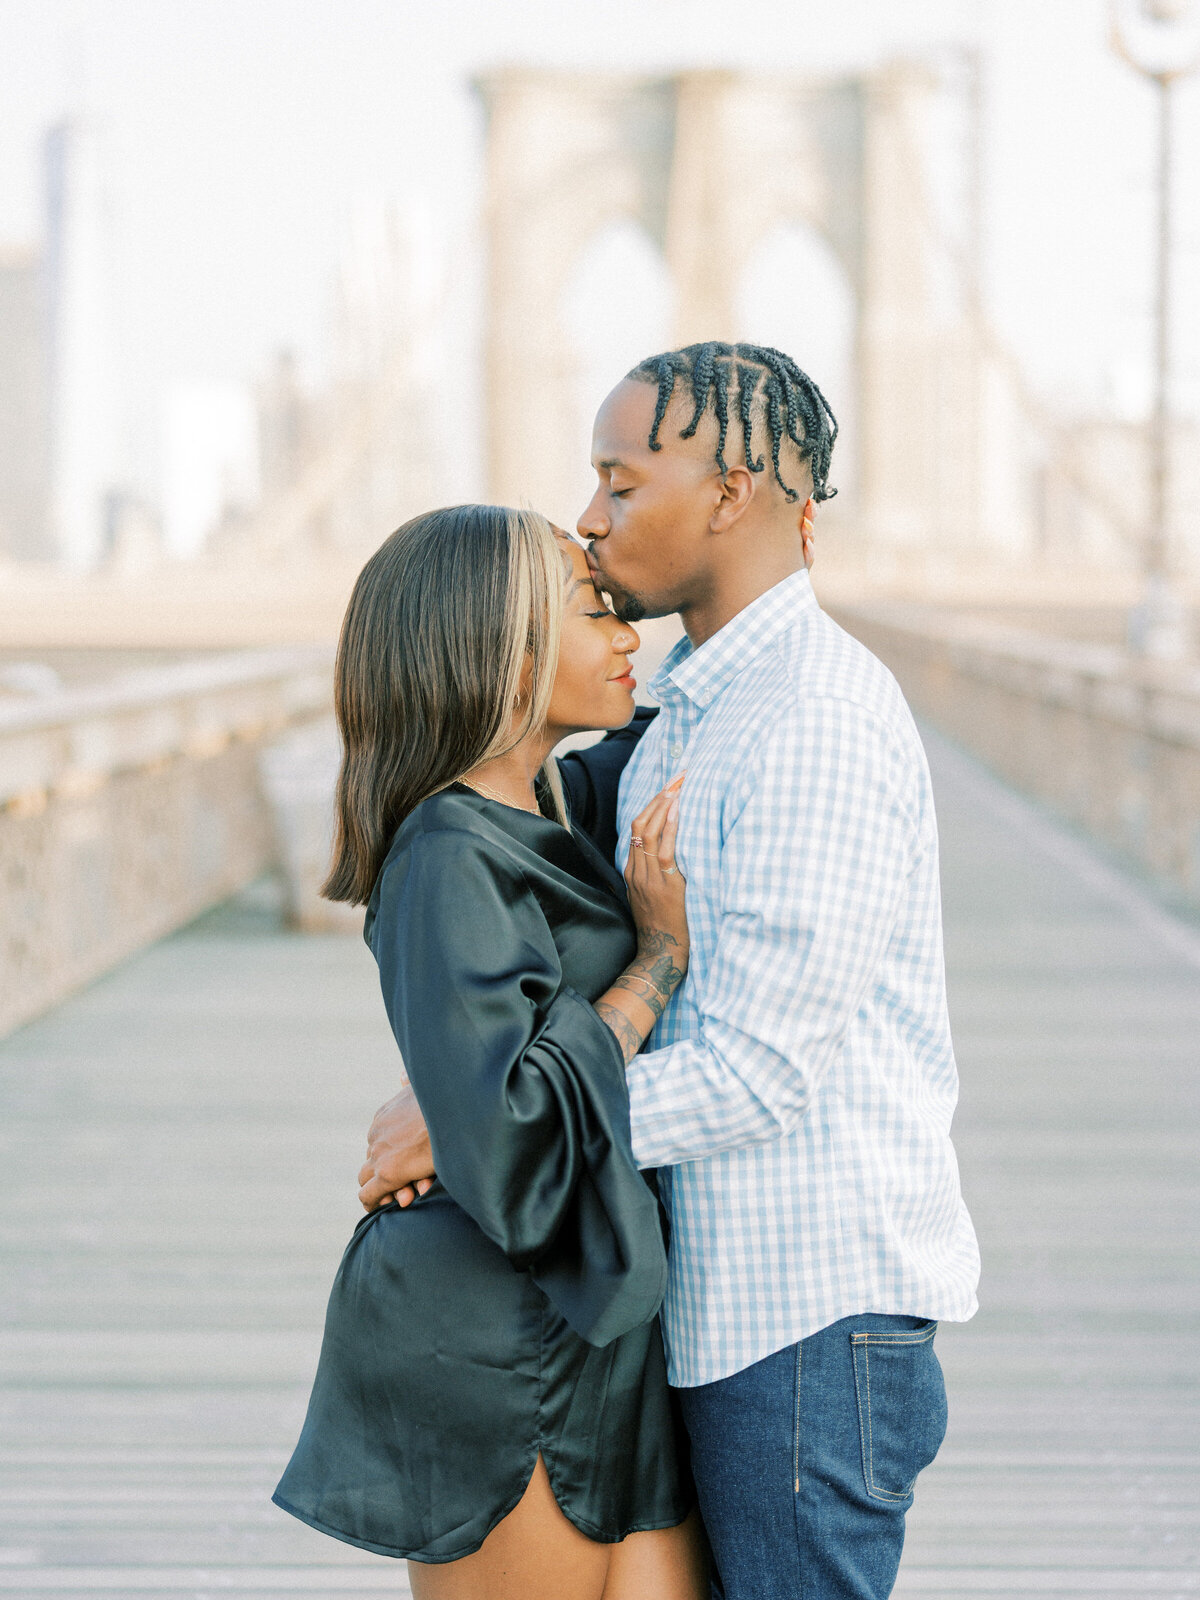 Brooklyn Bridge and DUMBO Sunrise, Engagement Session | Amarachi Ikeji Photography 23